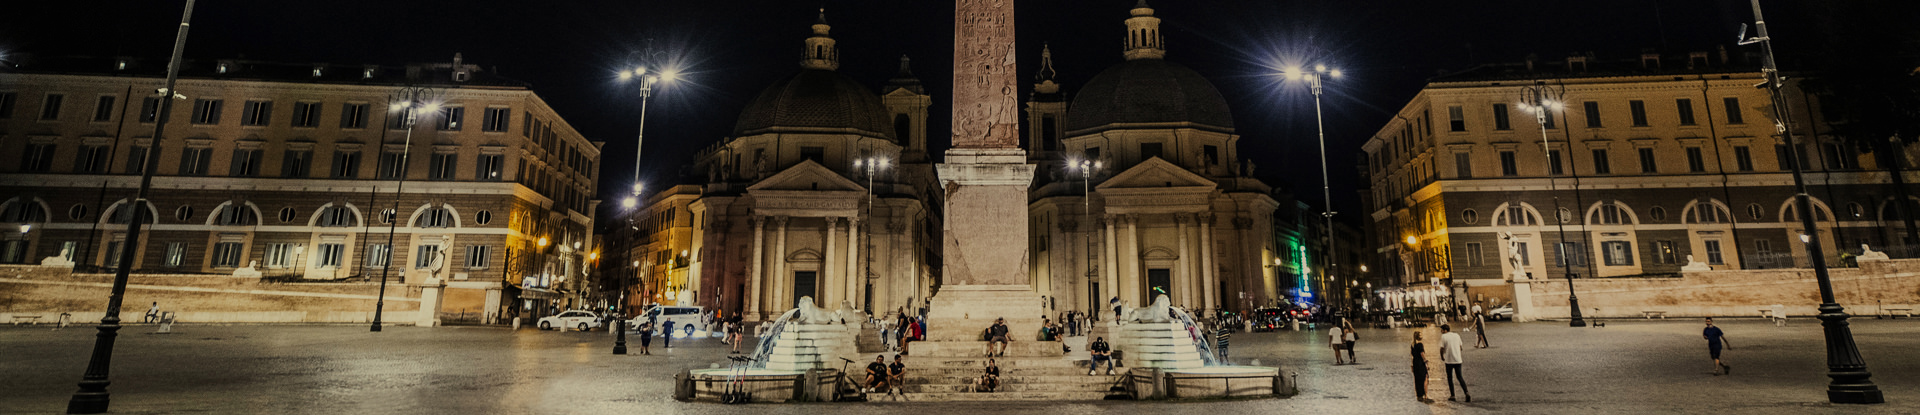 Acea, l'illuminazione artistica di Piazza del Popolo